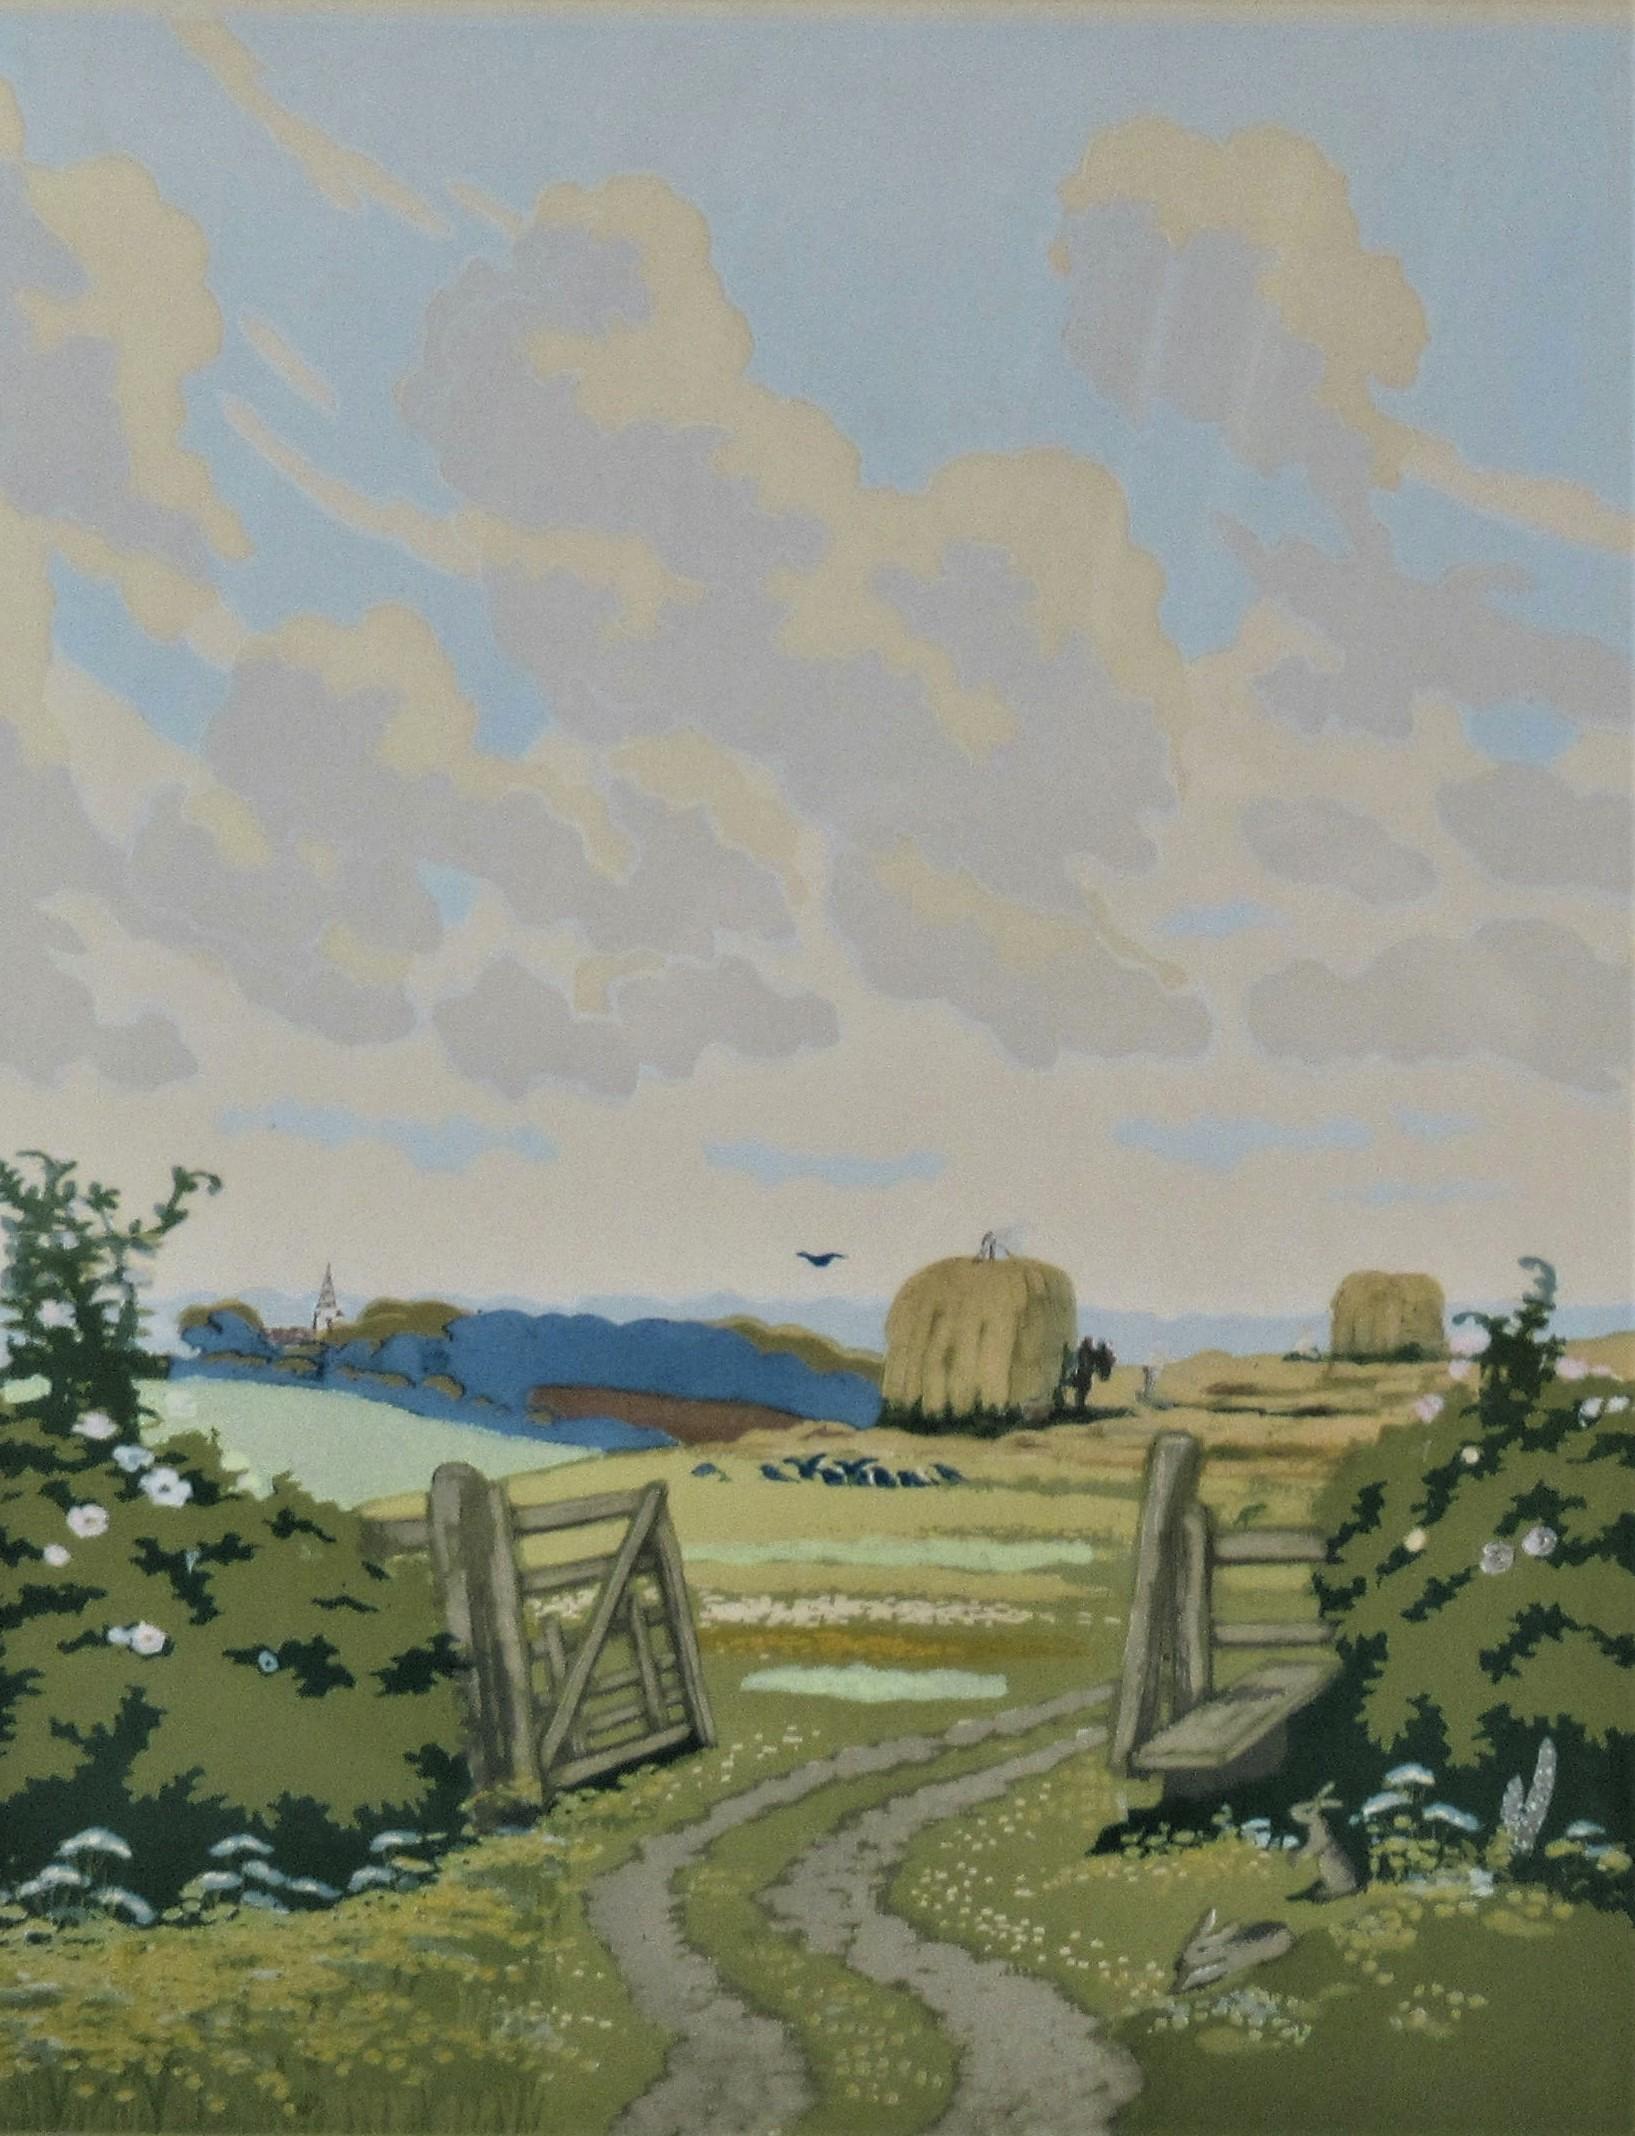 Gate mit offenem Öffnung – Print von John Hall Thorpe